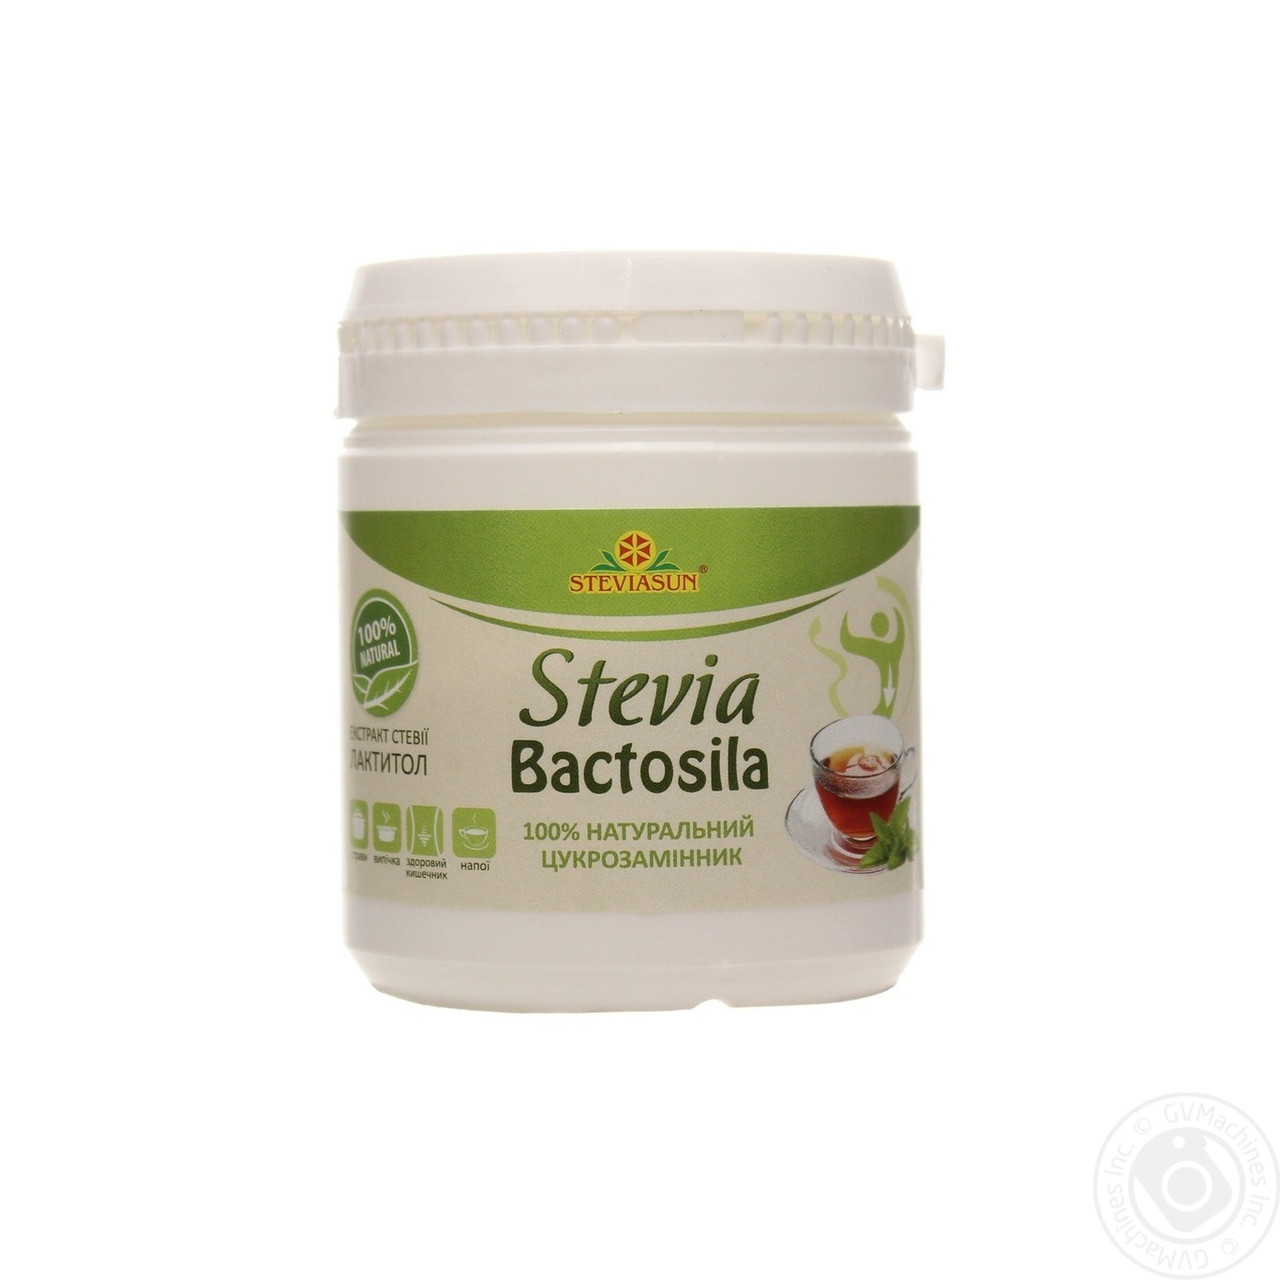 Бактосила (природний пробіотик, натуральний цукрозамінник)